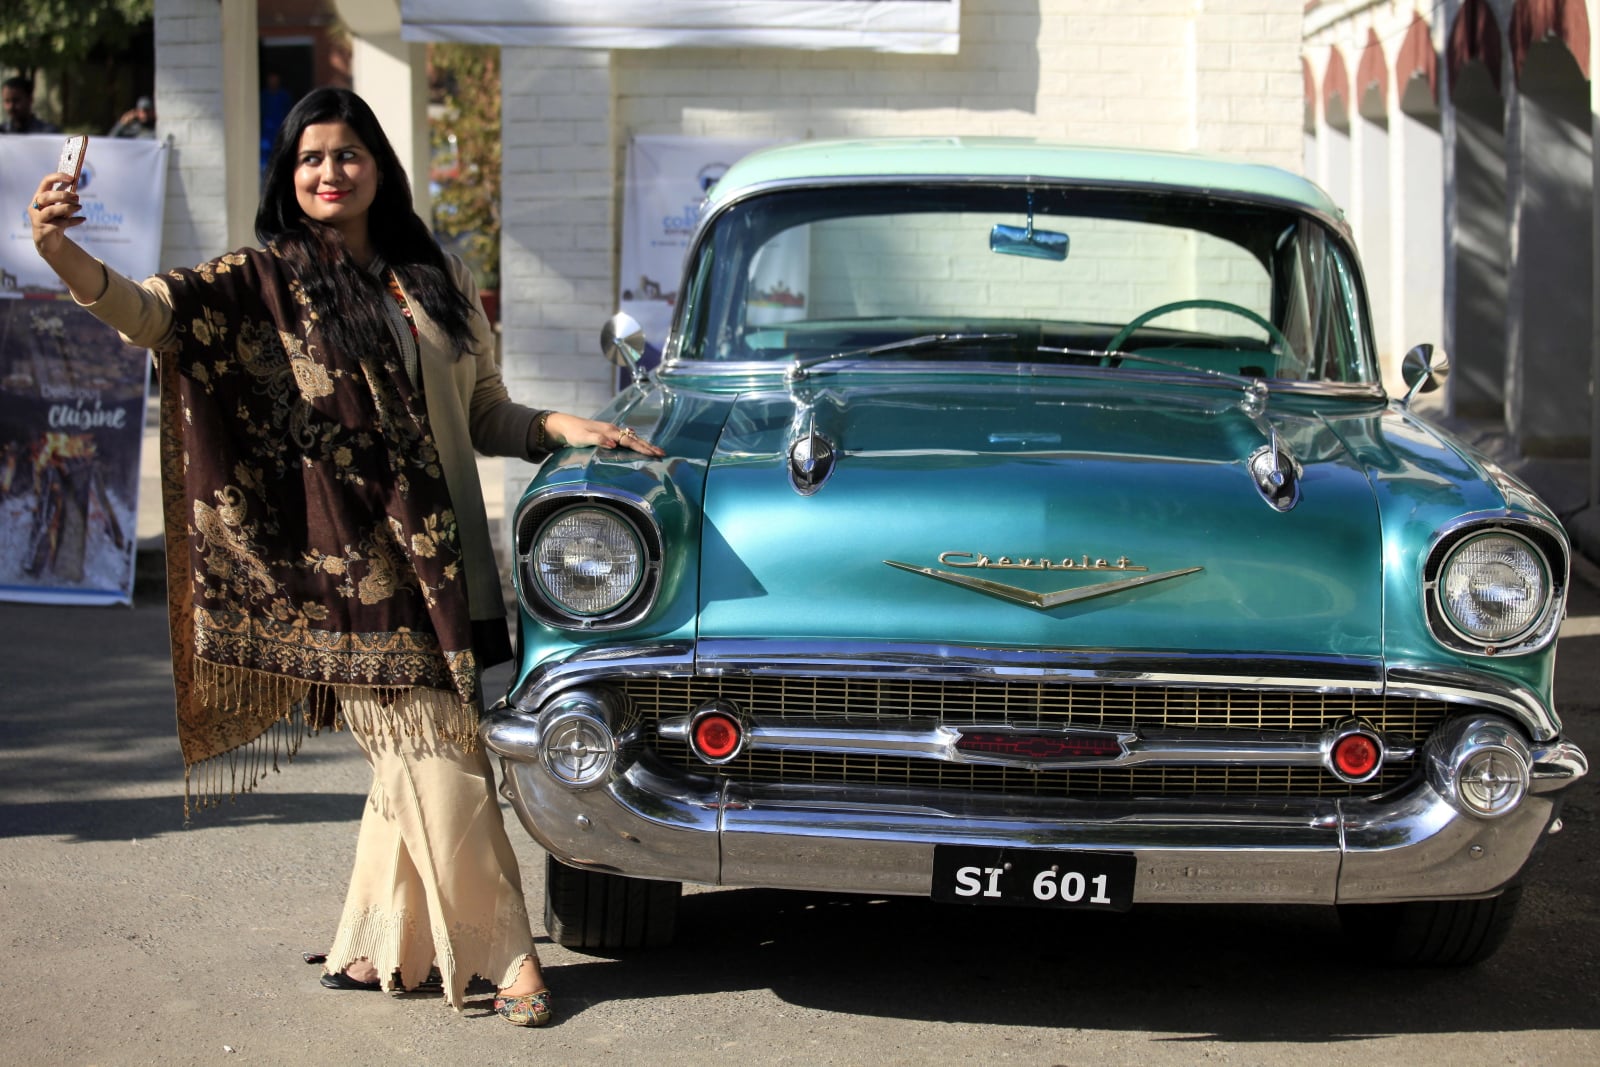 Pokaz starych samochodów w Peszawarze, Pakistan. Fot. PAP/EPA/BILAWAL ARBAB